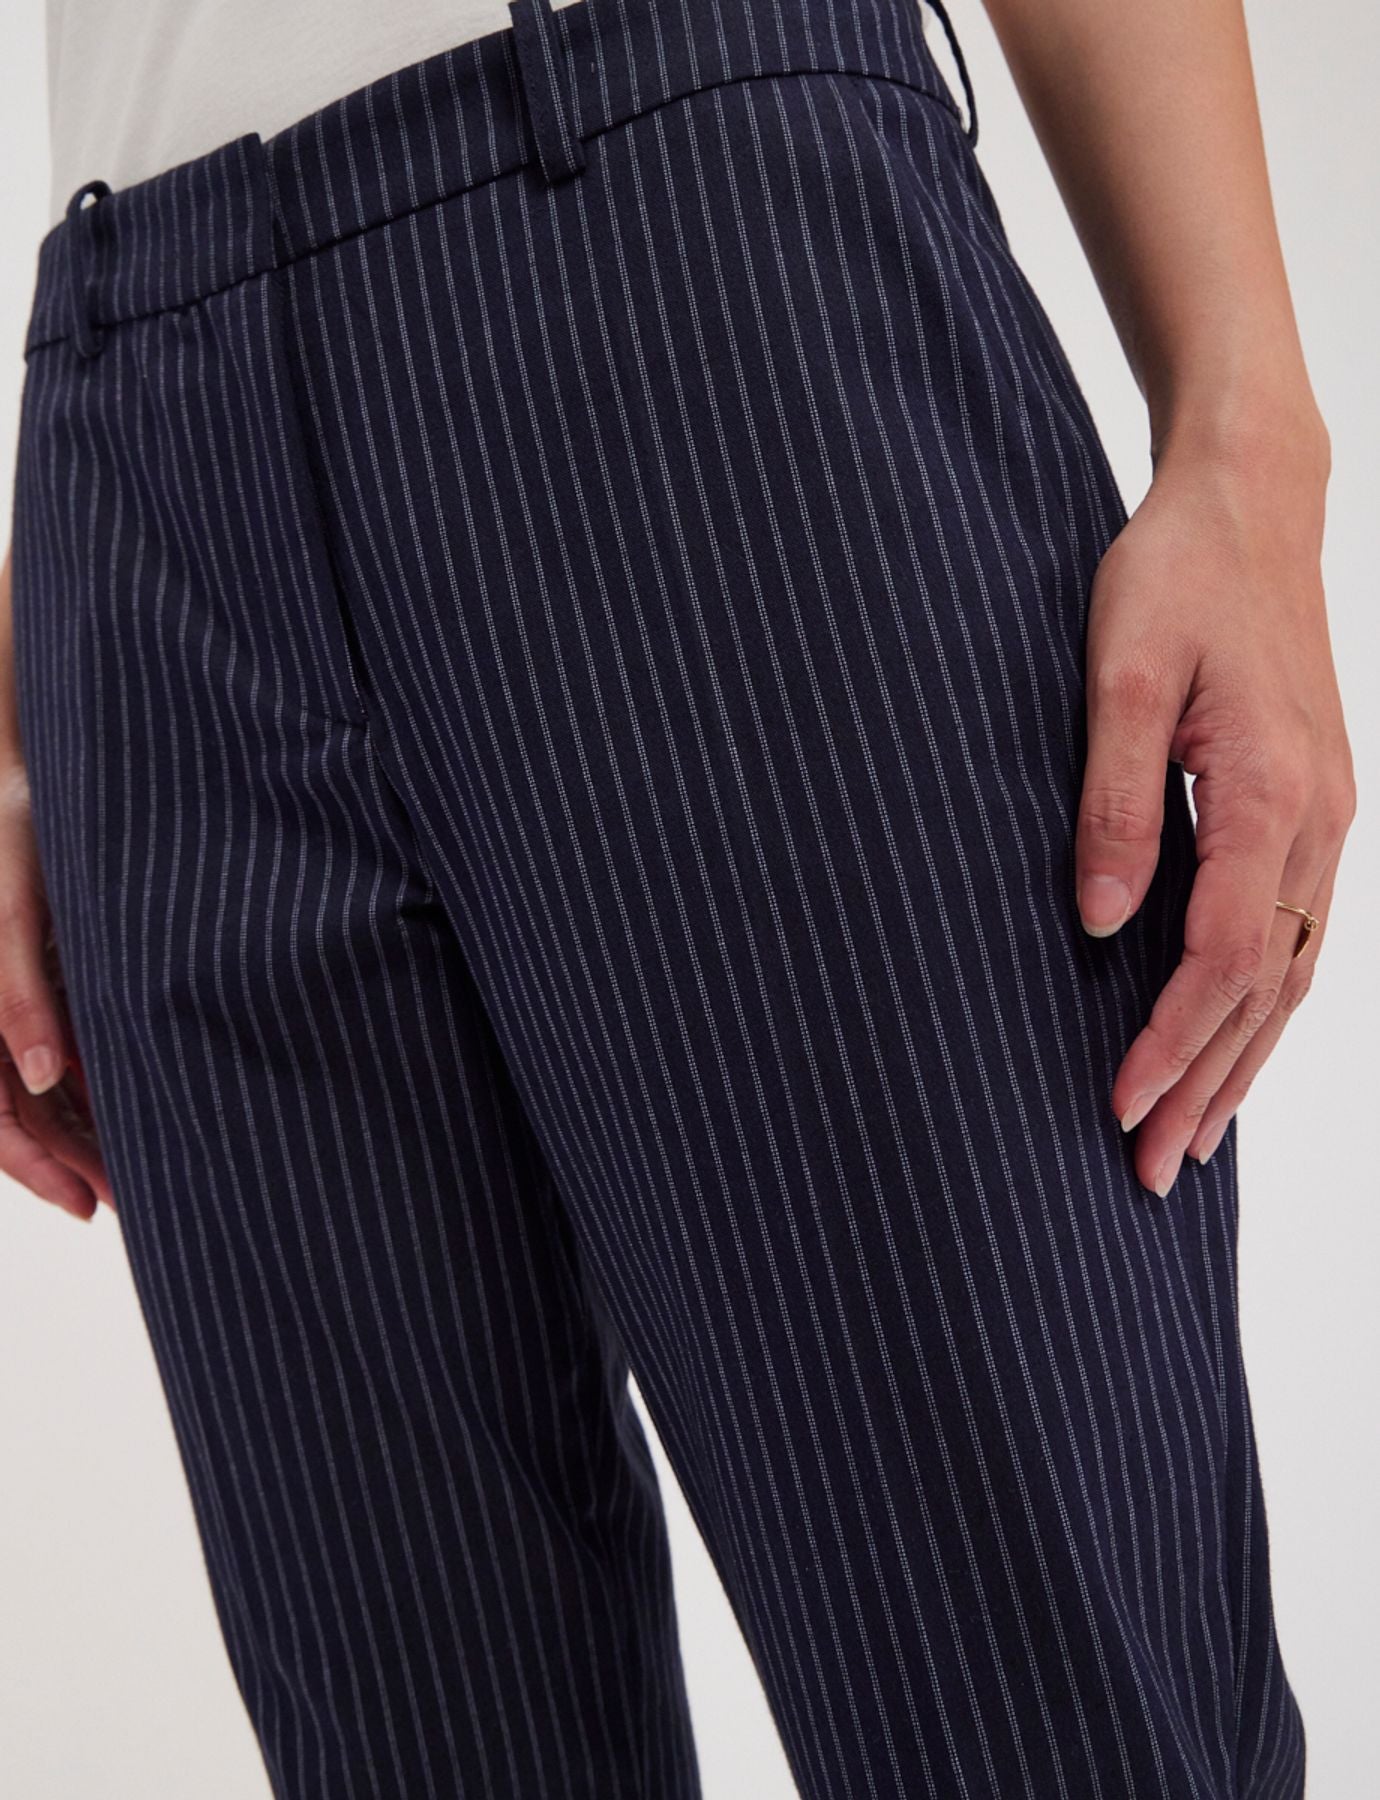 pantaloni-audrey-navy-a-fine-stripes